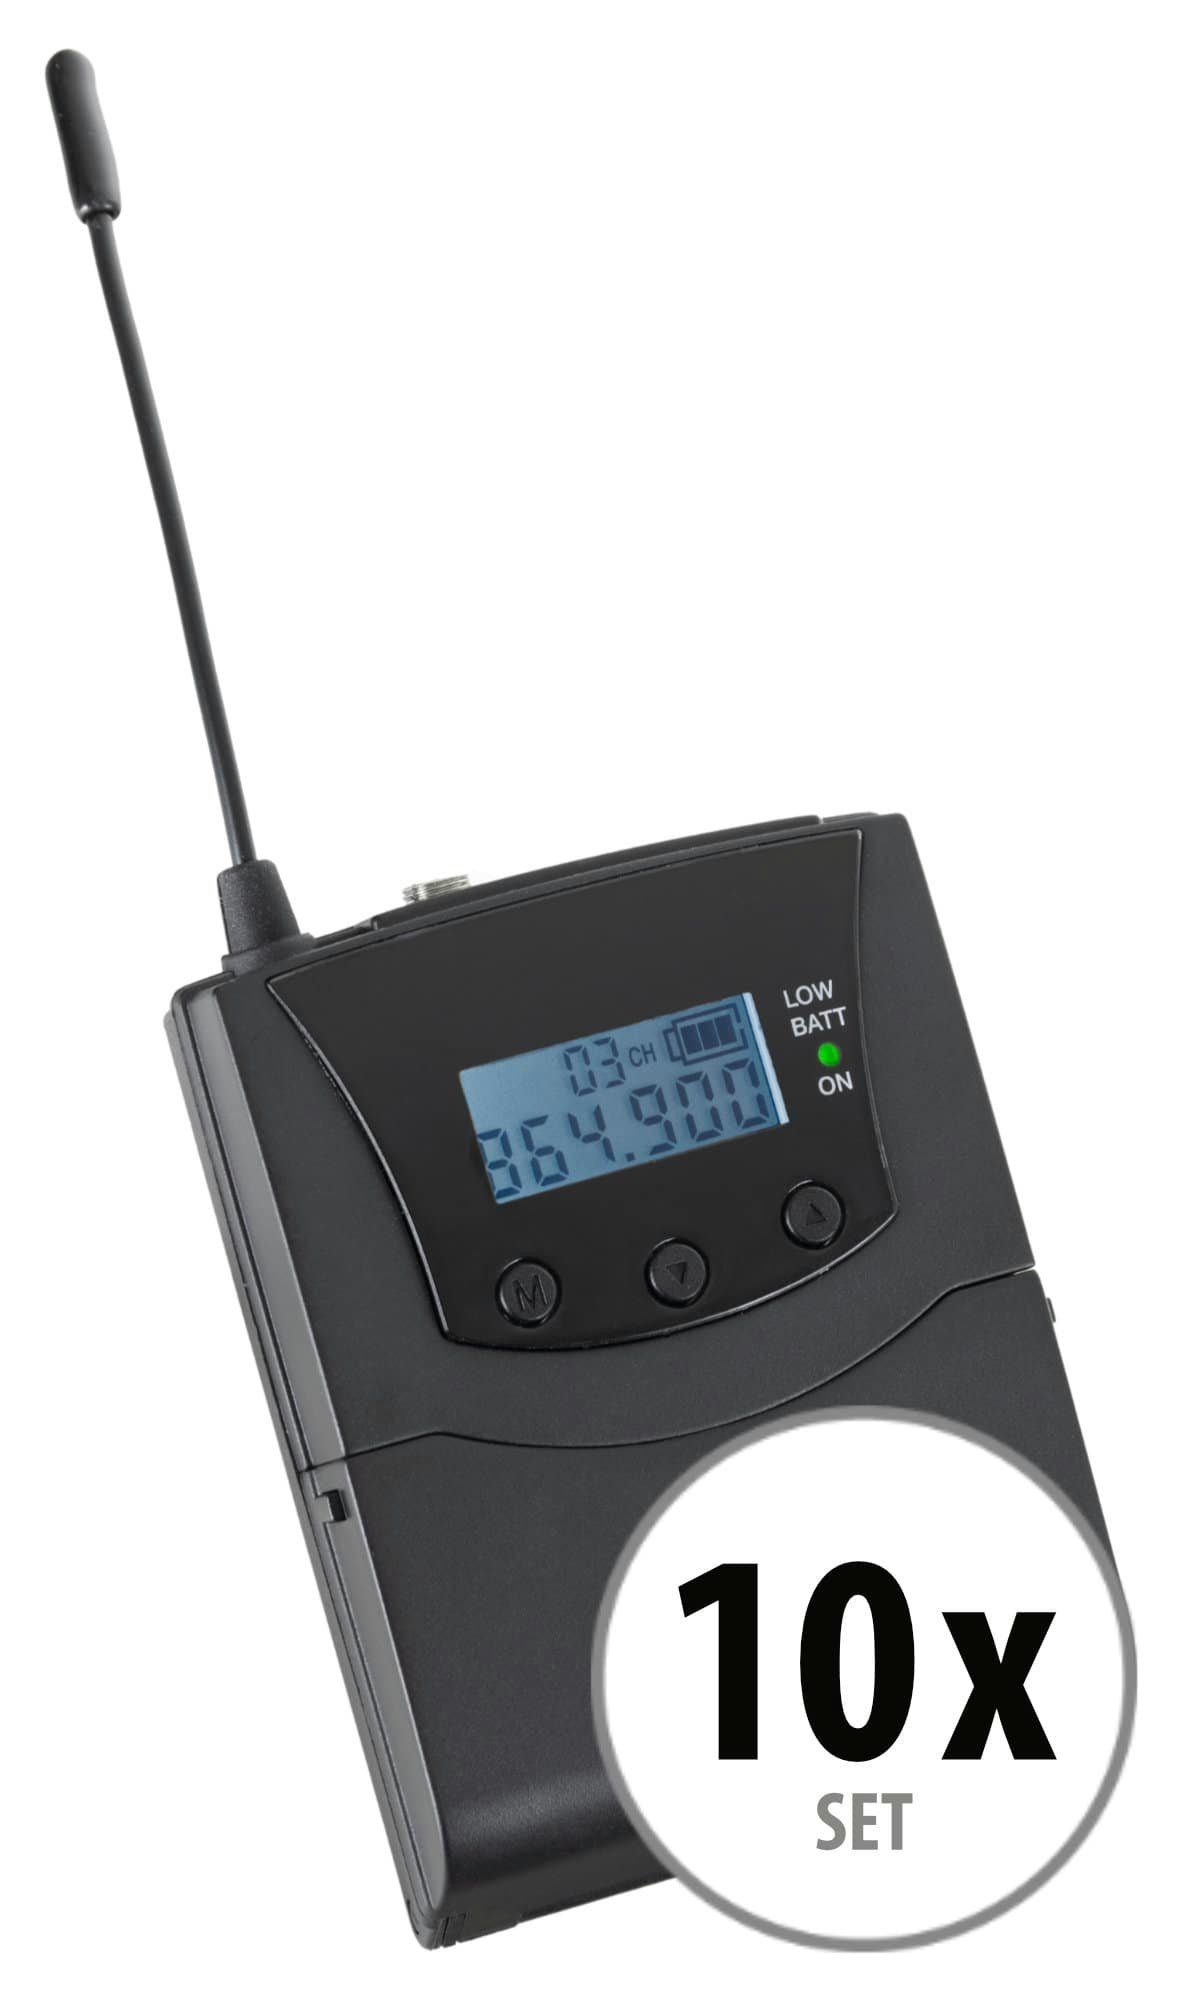 Beatfoxx Silent Guide V2 SDR-BP30 Bodypack-Receiver Funk-Kopfhörer (Stereo Funk-Empfänger mit 3 empfangbare Kanäle, UHF-Technik, zur Verwendung mit jedem handelsüblichen Kopfhörer)